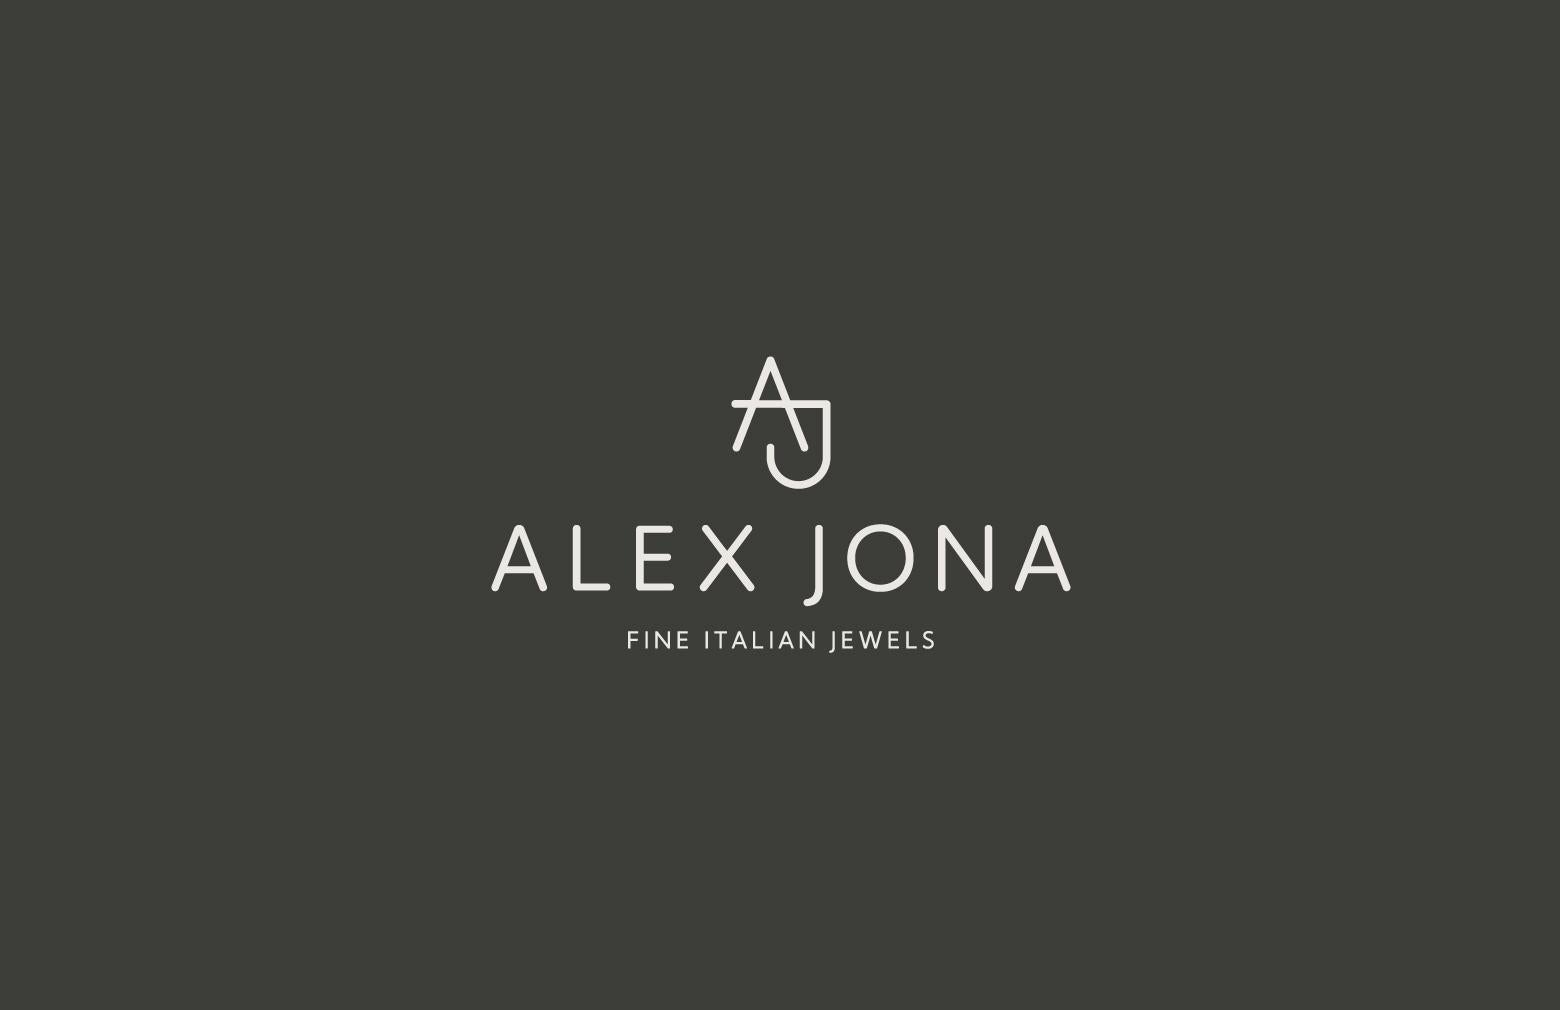 Alex Jona White Diamond 18 Karat White Gold Treillage Pendant For Sale 7